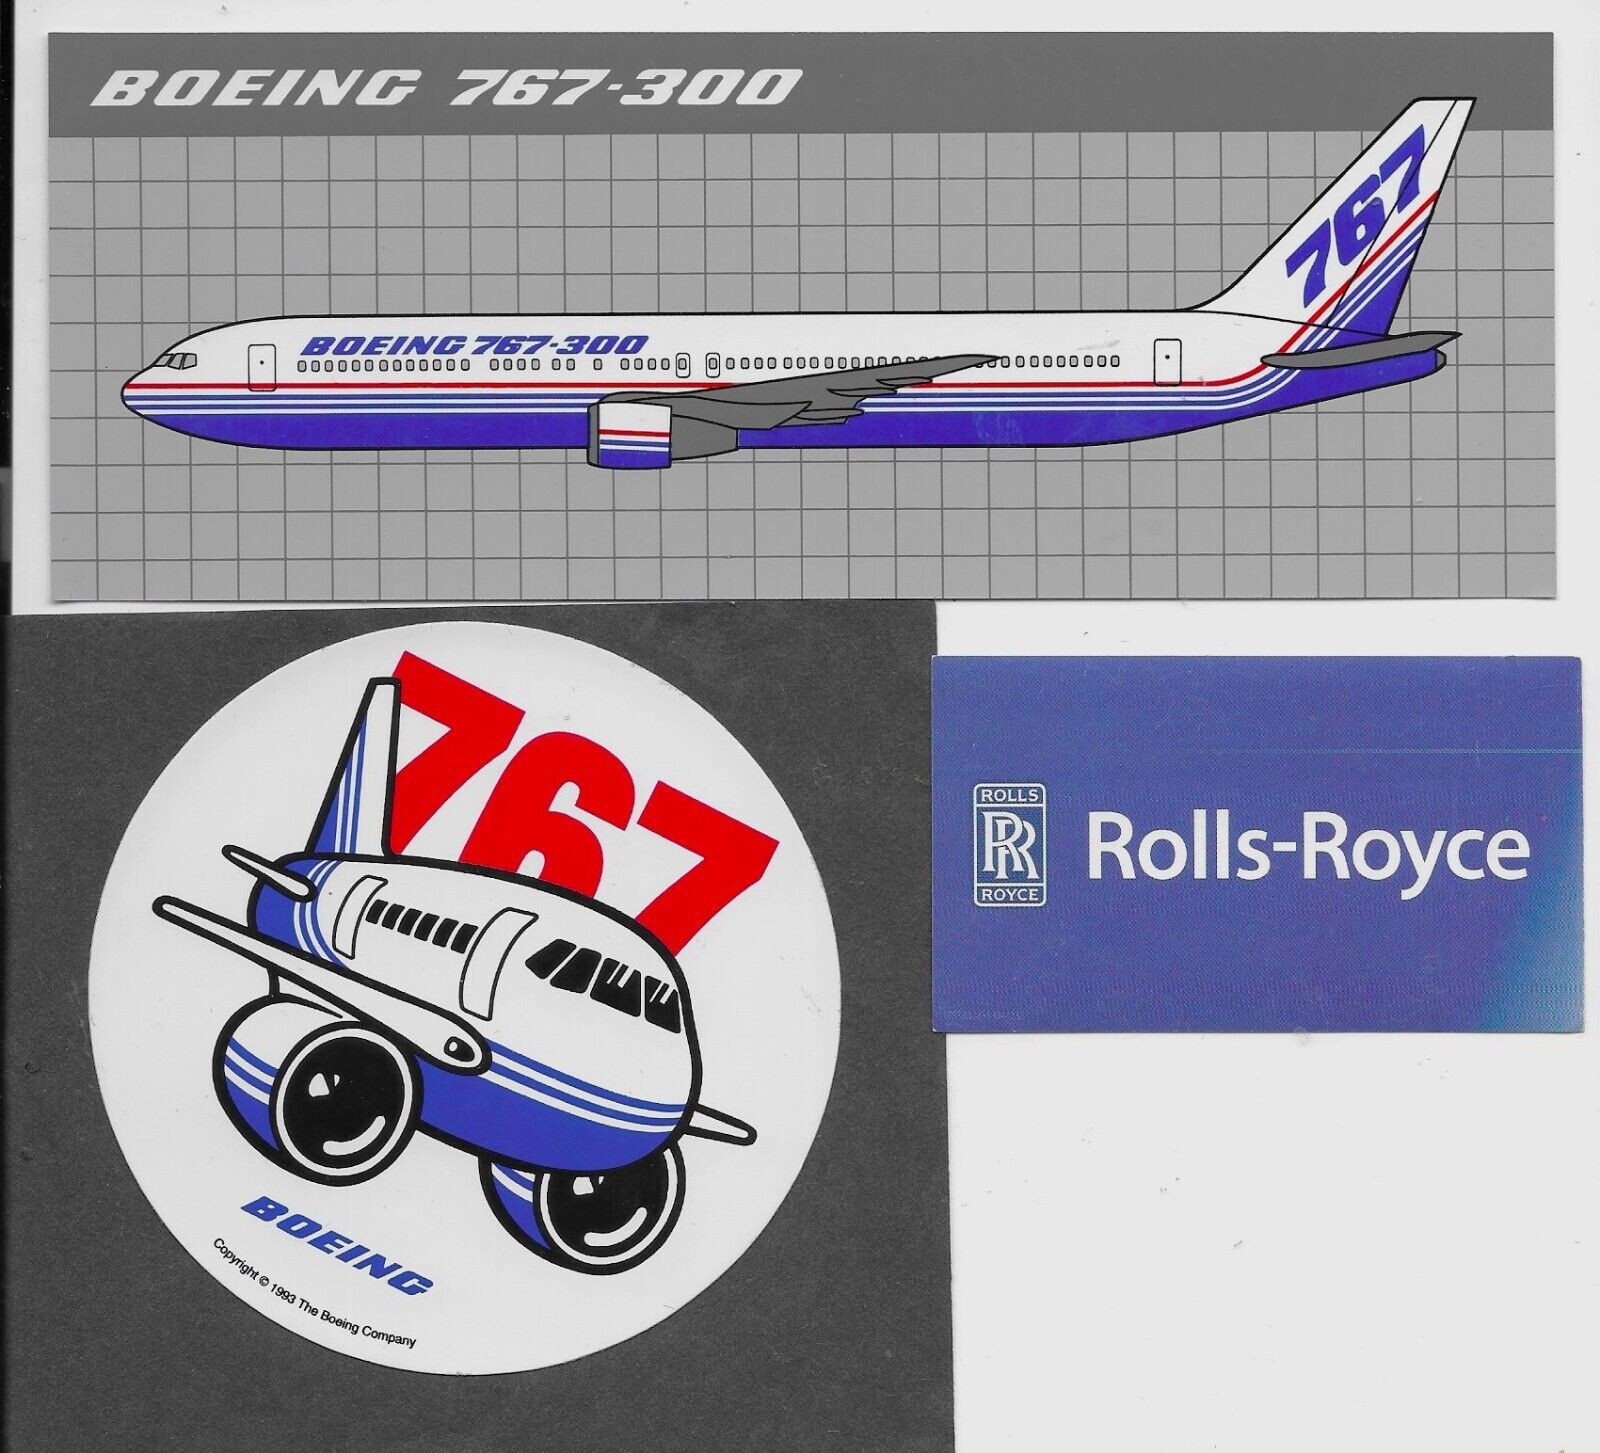 Boeing-767-300 Sticker & 767 Pudgy & Rolls Royce Engine Sticker